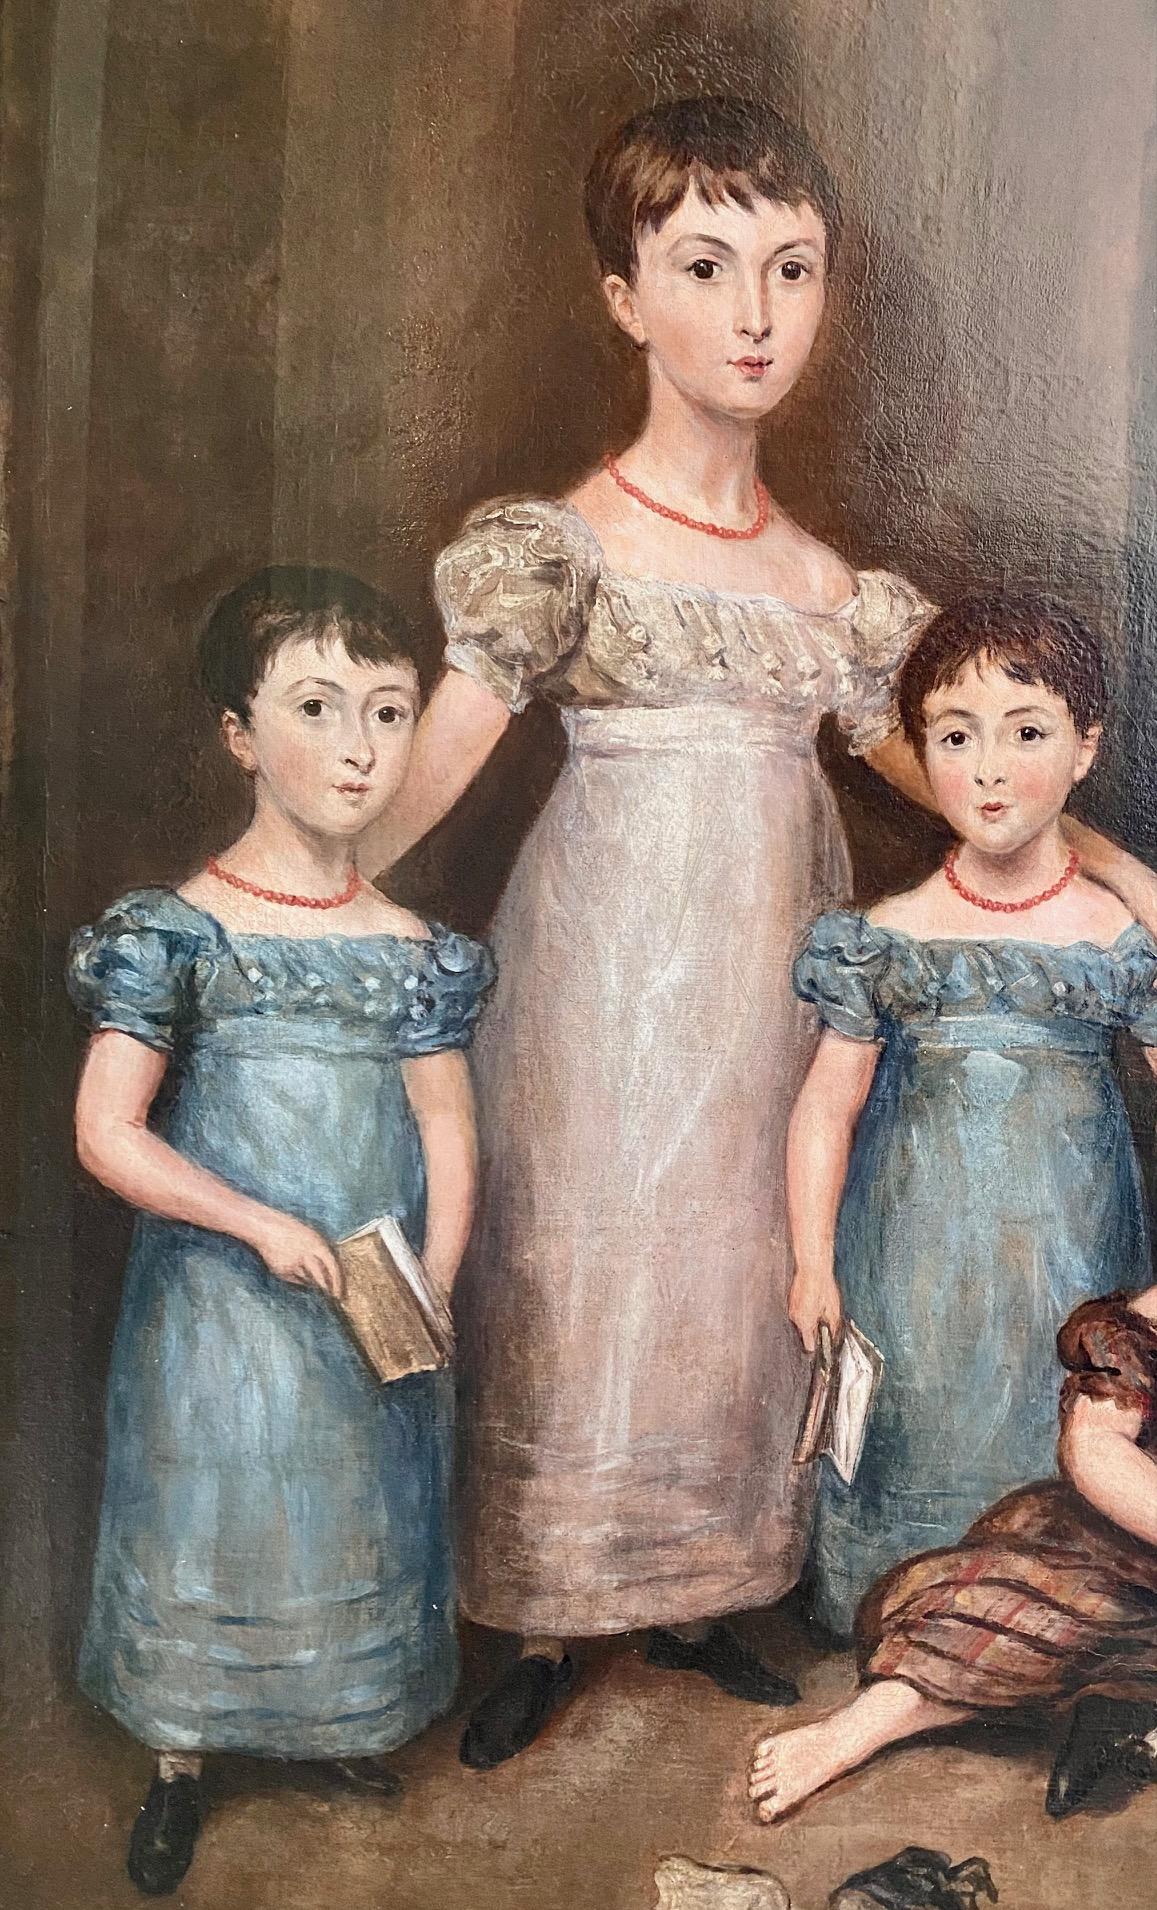 Frühes 19. Jahrhundert Porträt der Zwillinge der Familie Marsh, von  Thomas Arrowsmith (Englisch: 1772 - 1834), um 1830, ein Gruppenporträt in Öl auf Leinwand der berühmten fünf Kinder der Bostoner Familie Marsh. Die beiden Zwillingsmädchen und ihr